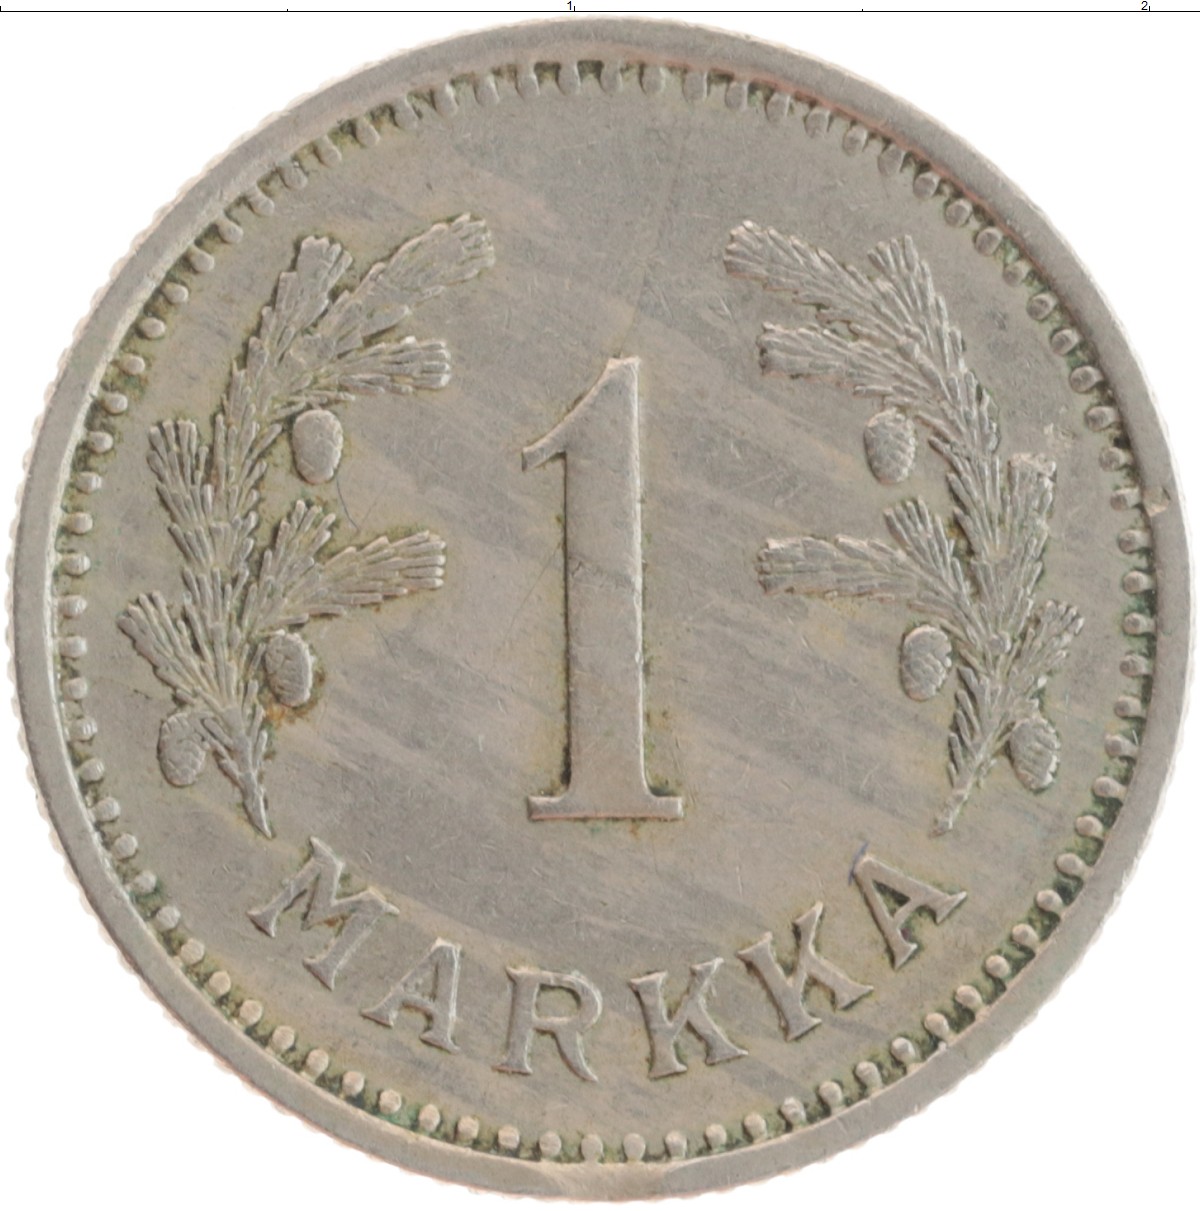 1 mark each. Финляндская марка. Монета 1 markka 1928. 1 Markka Finland. Финская марка 1860.